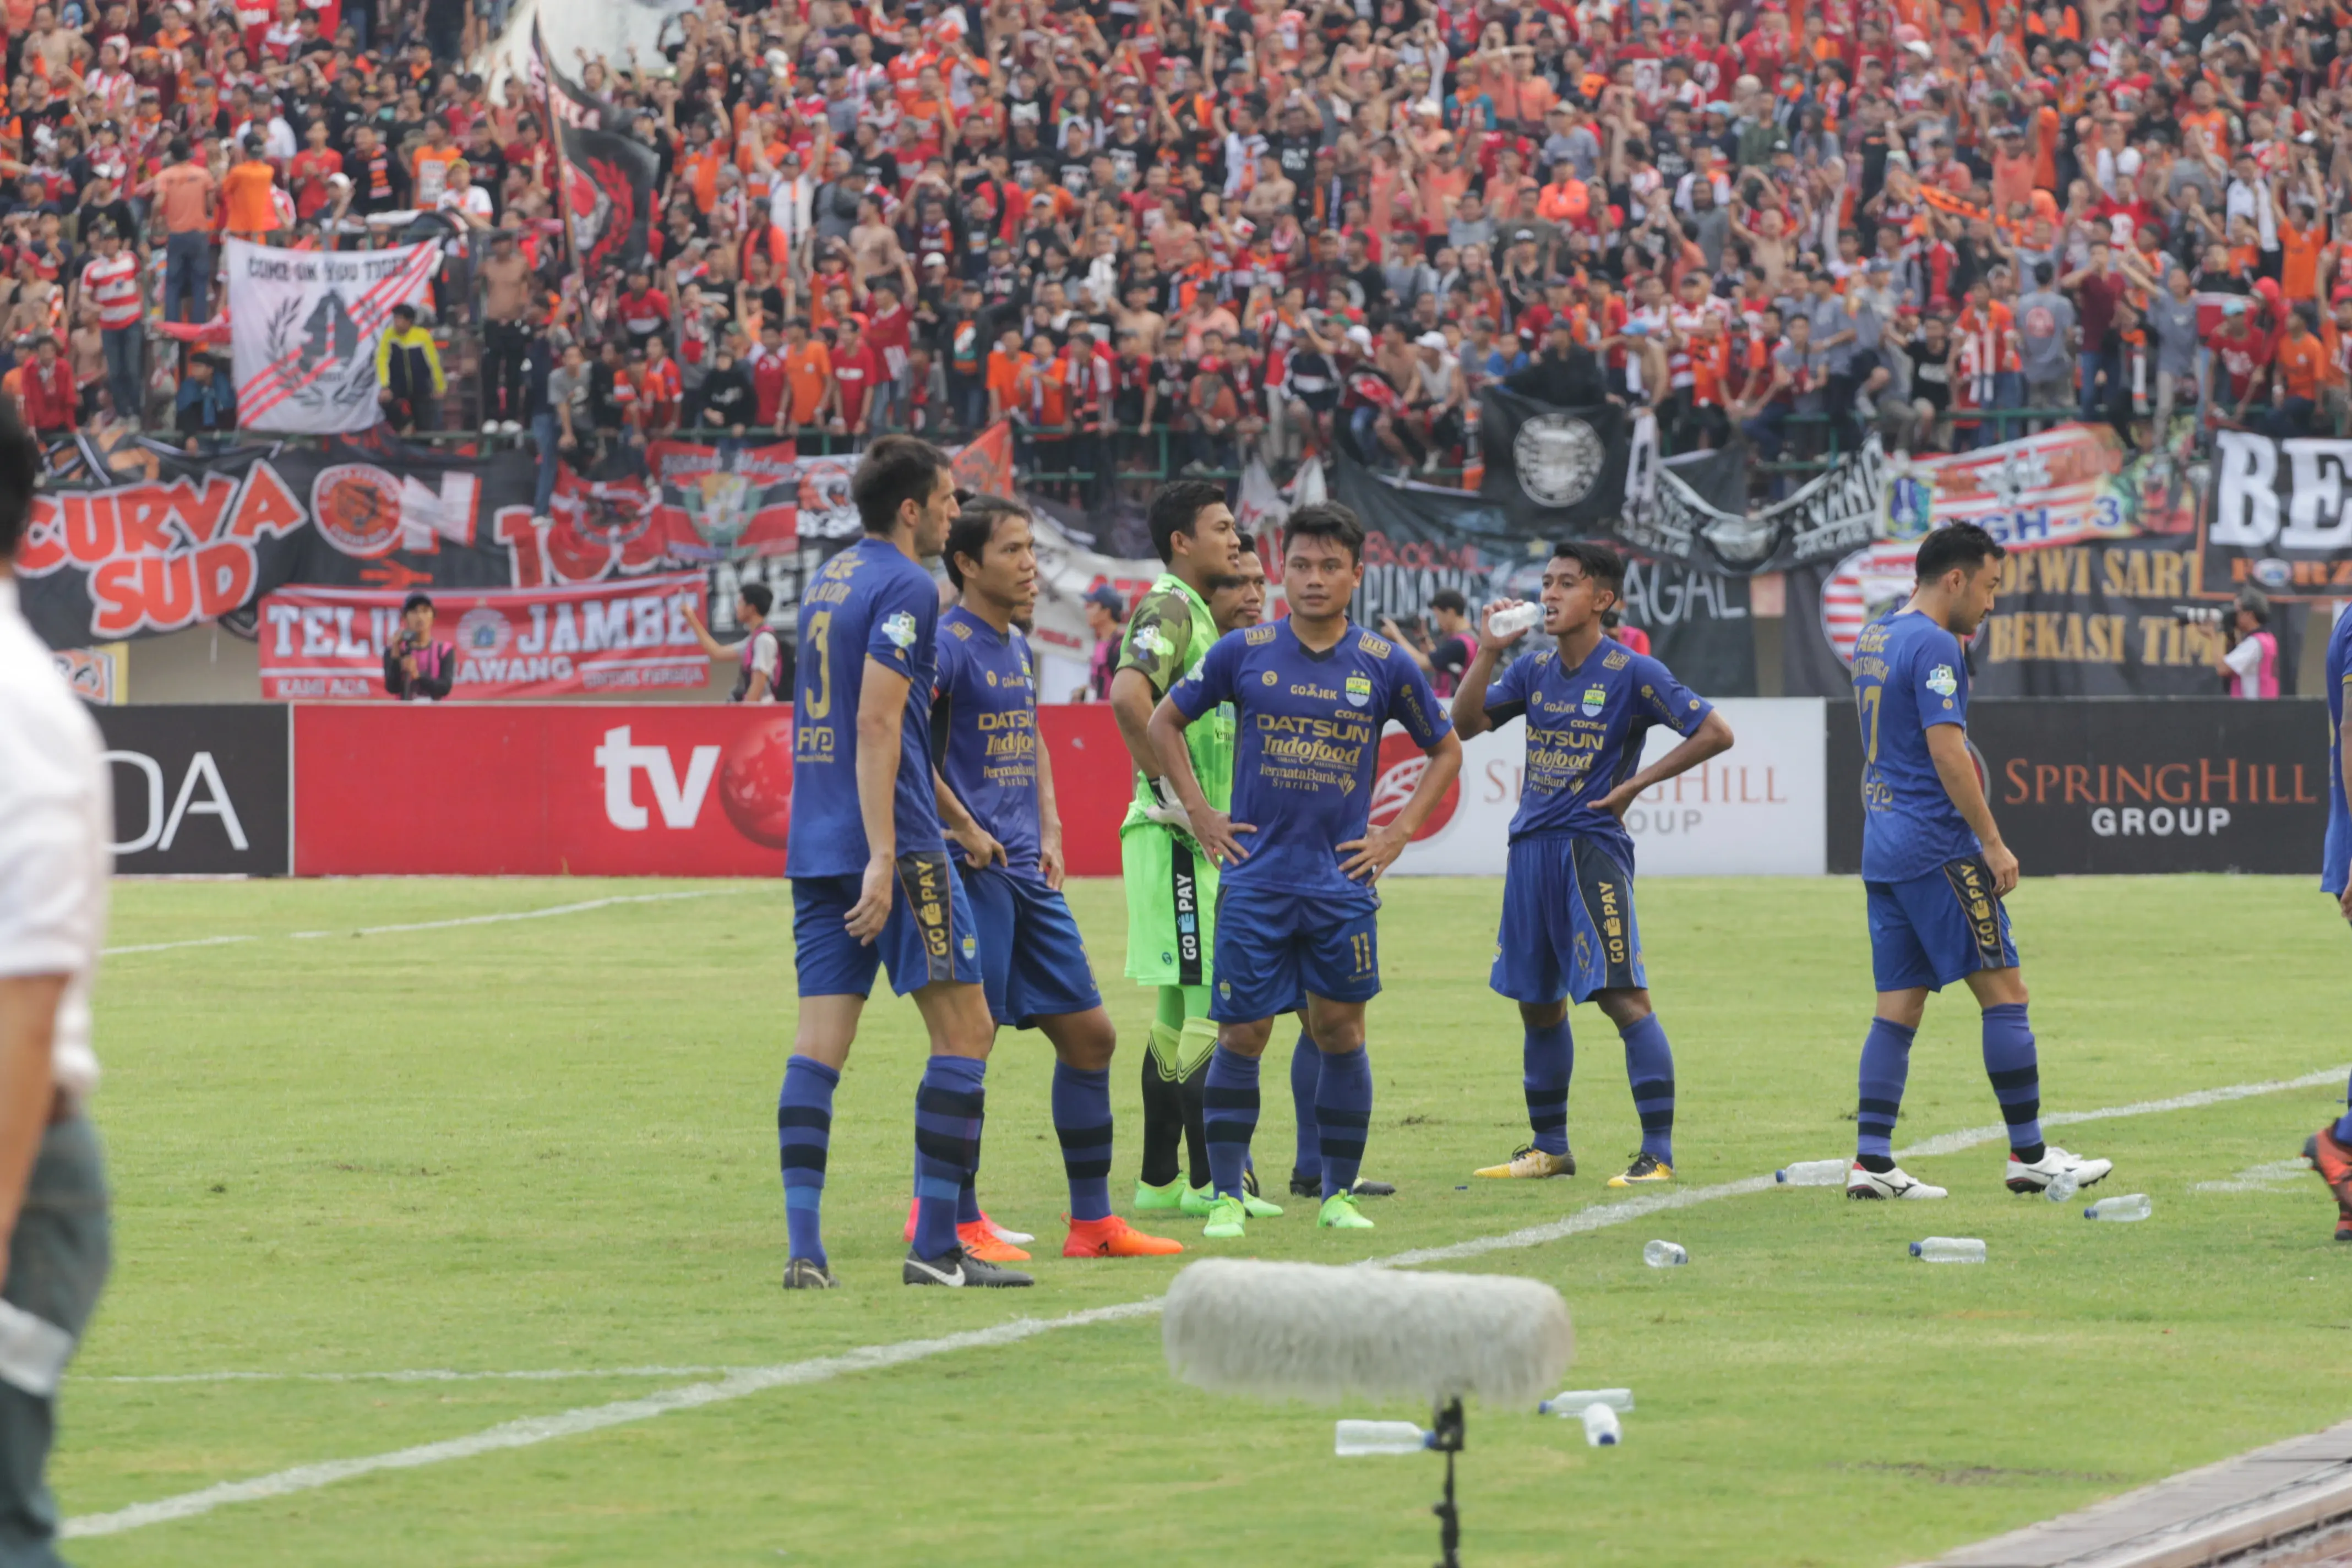 Para pemain Persib Bandung berdiri di pinggir lapangan setelah memutuskan mogok bertanding dalam laga melawan Persija Jakarta di Stadion Manahan, Solo, Jumat (3/11/2017). (Bola.com/Ronald Seger Prabowo)